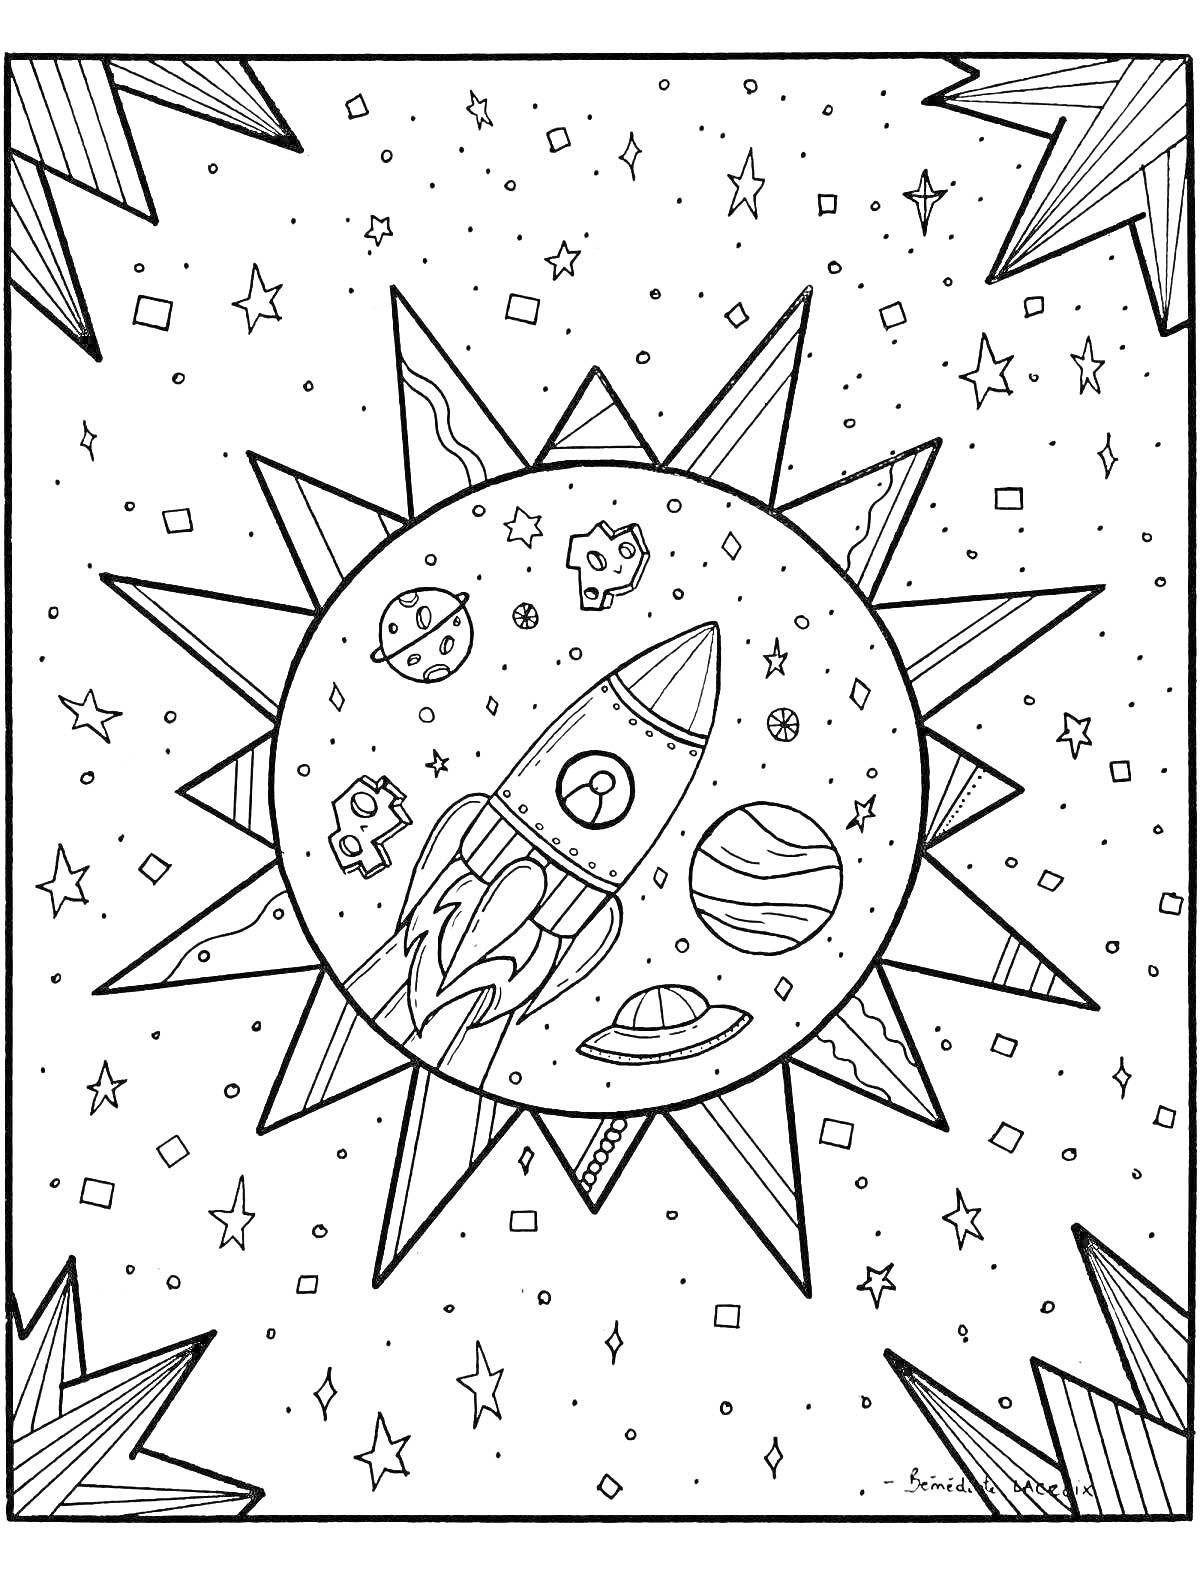 Раскраска Космическая сцена с ракетой в центре, планетами и астероидами на фоне, звездами и частями солнца по углам.